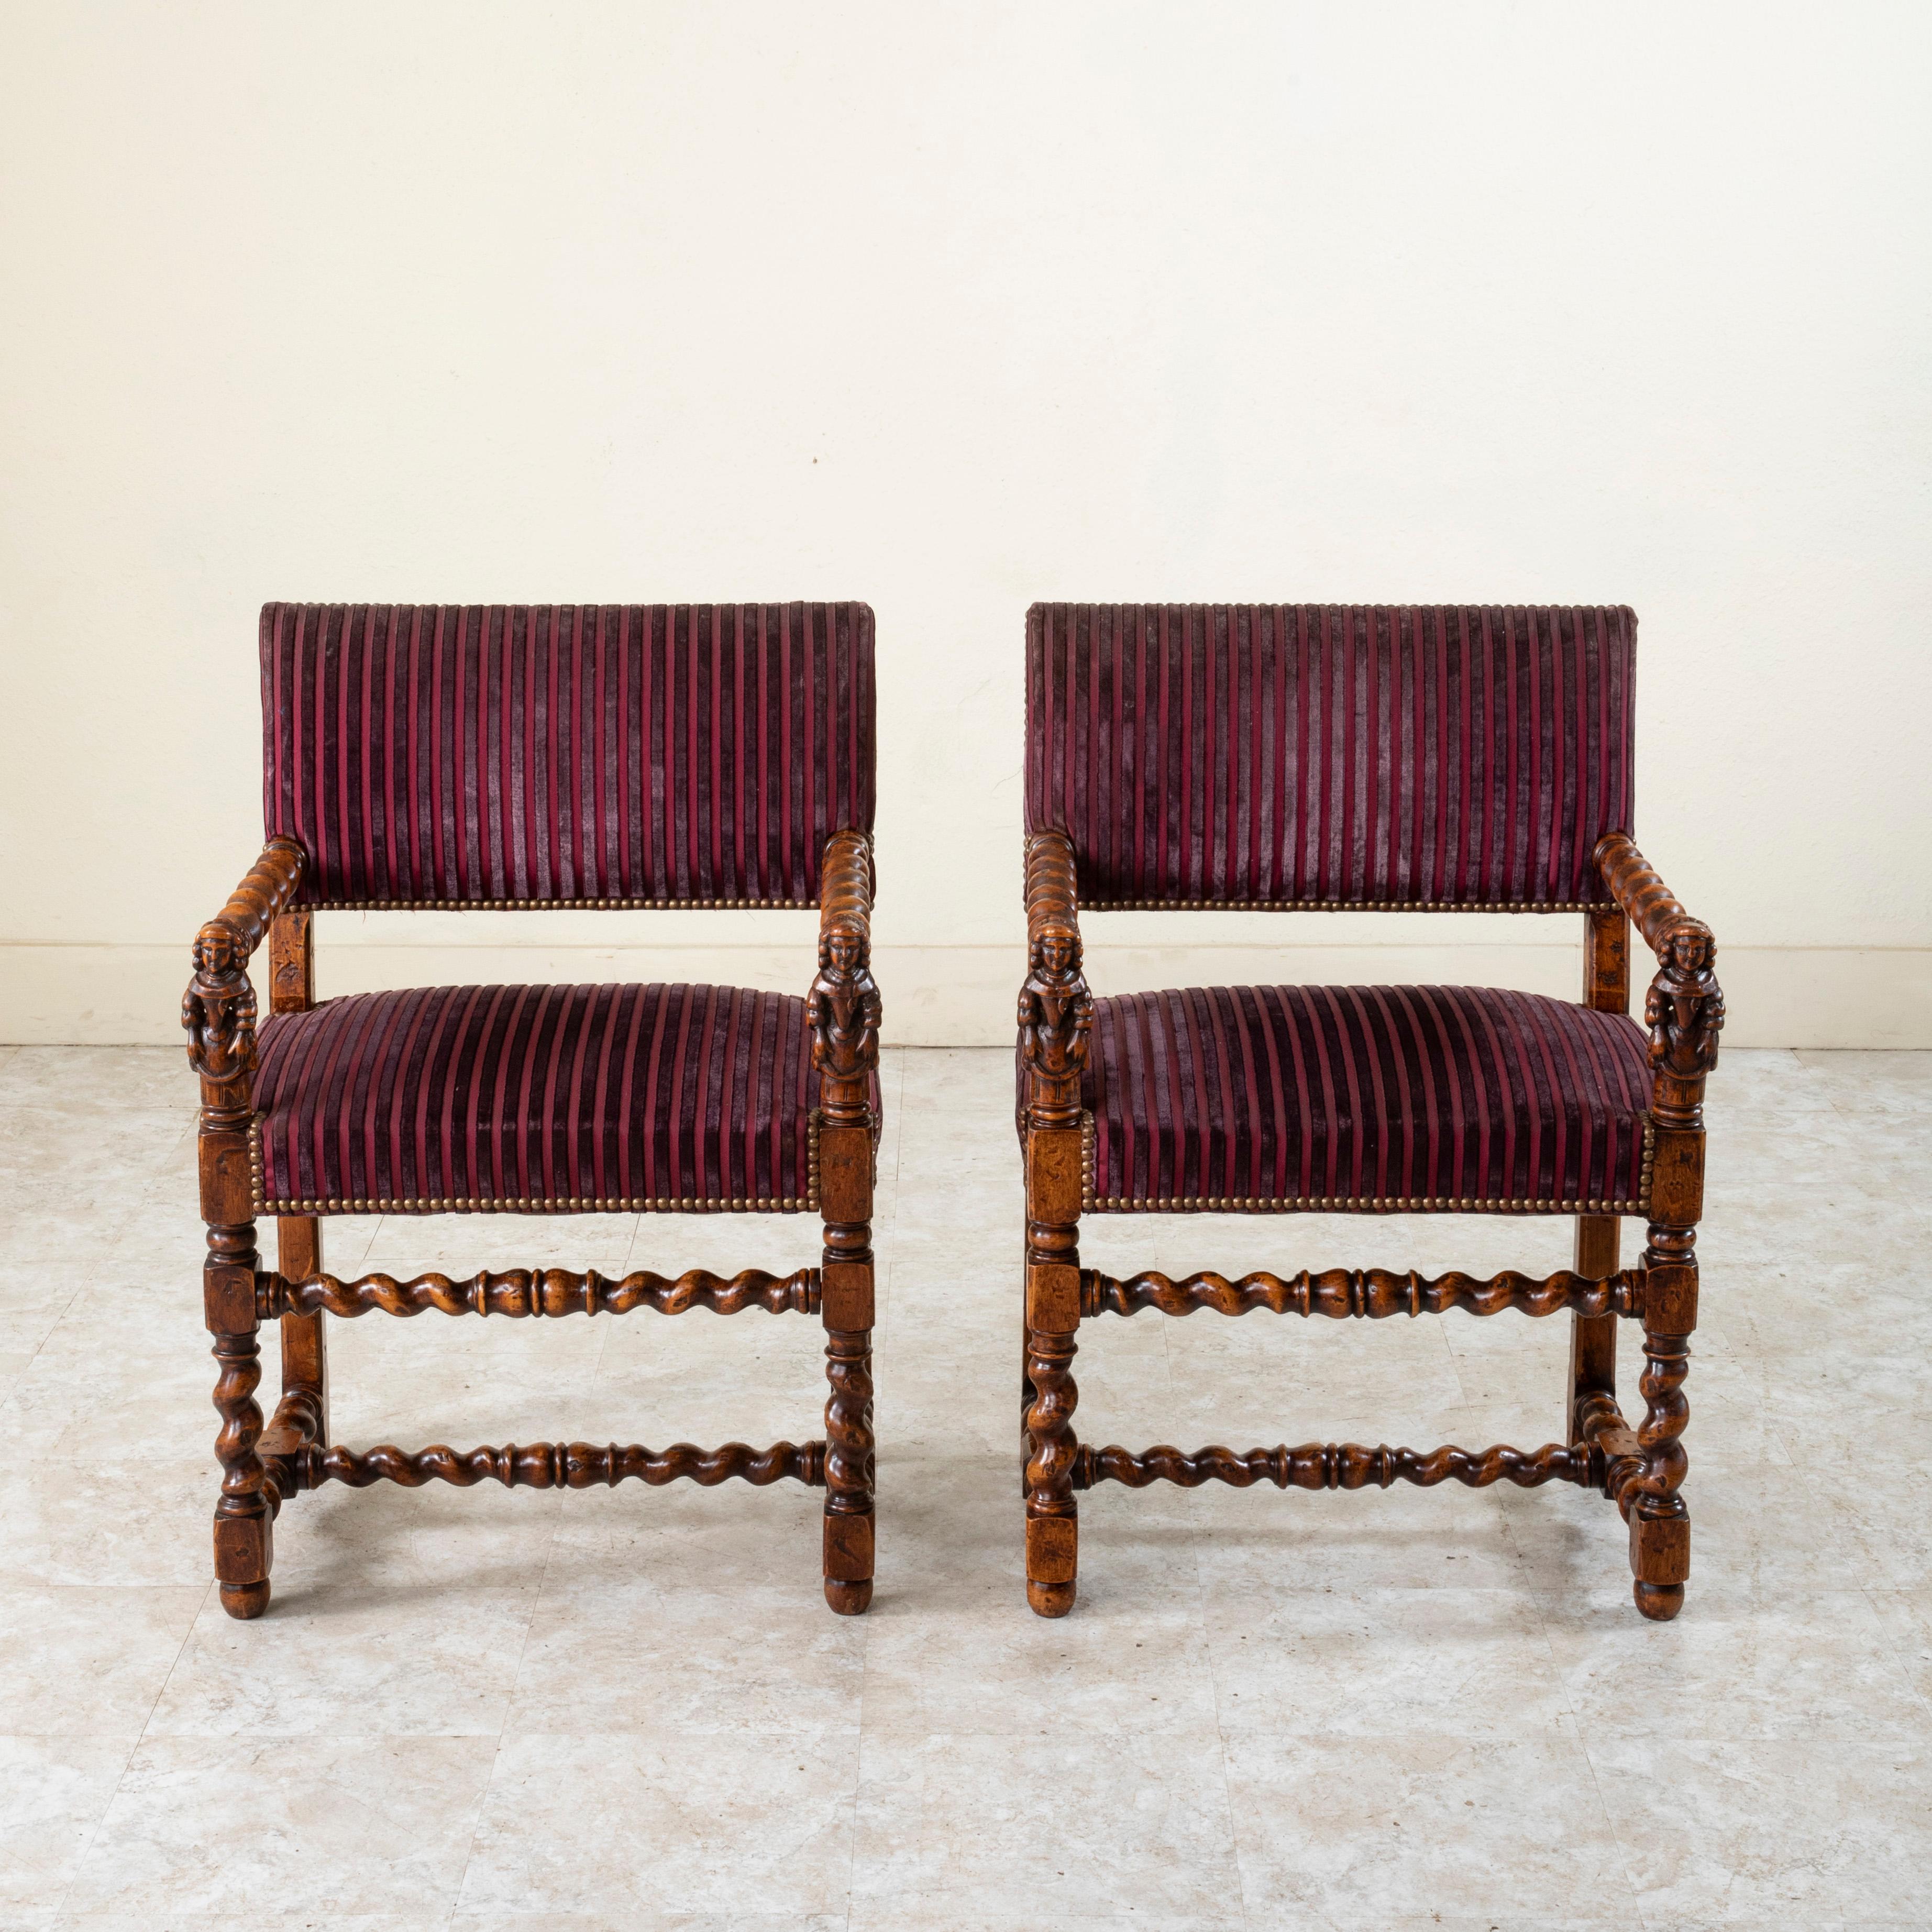 Dieses Paar französischer Sessel im Stil Ludwigs XIII. aus dem späten neunzehnten Jahrhundert zeigt handgeschnitzte Frauenfiguren aus der Renaissance, die die handgedrechselten Armlehnen aus Gerstenkorn stützen. Die Sitze ruhen auf klassischen